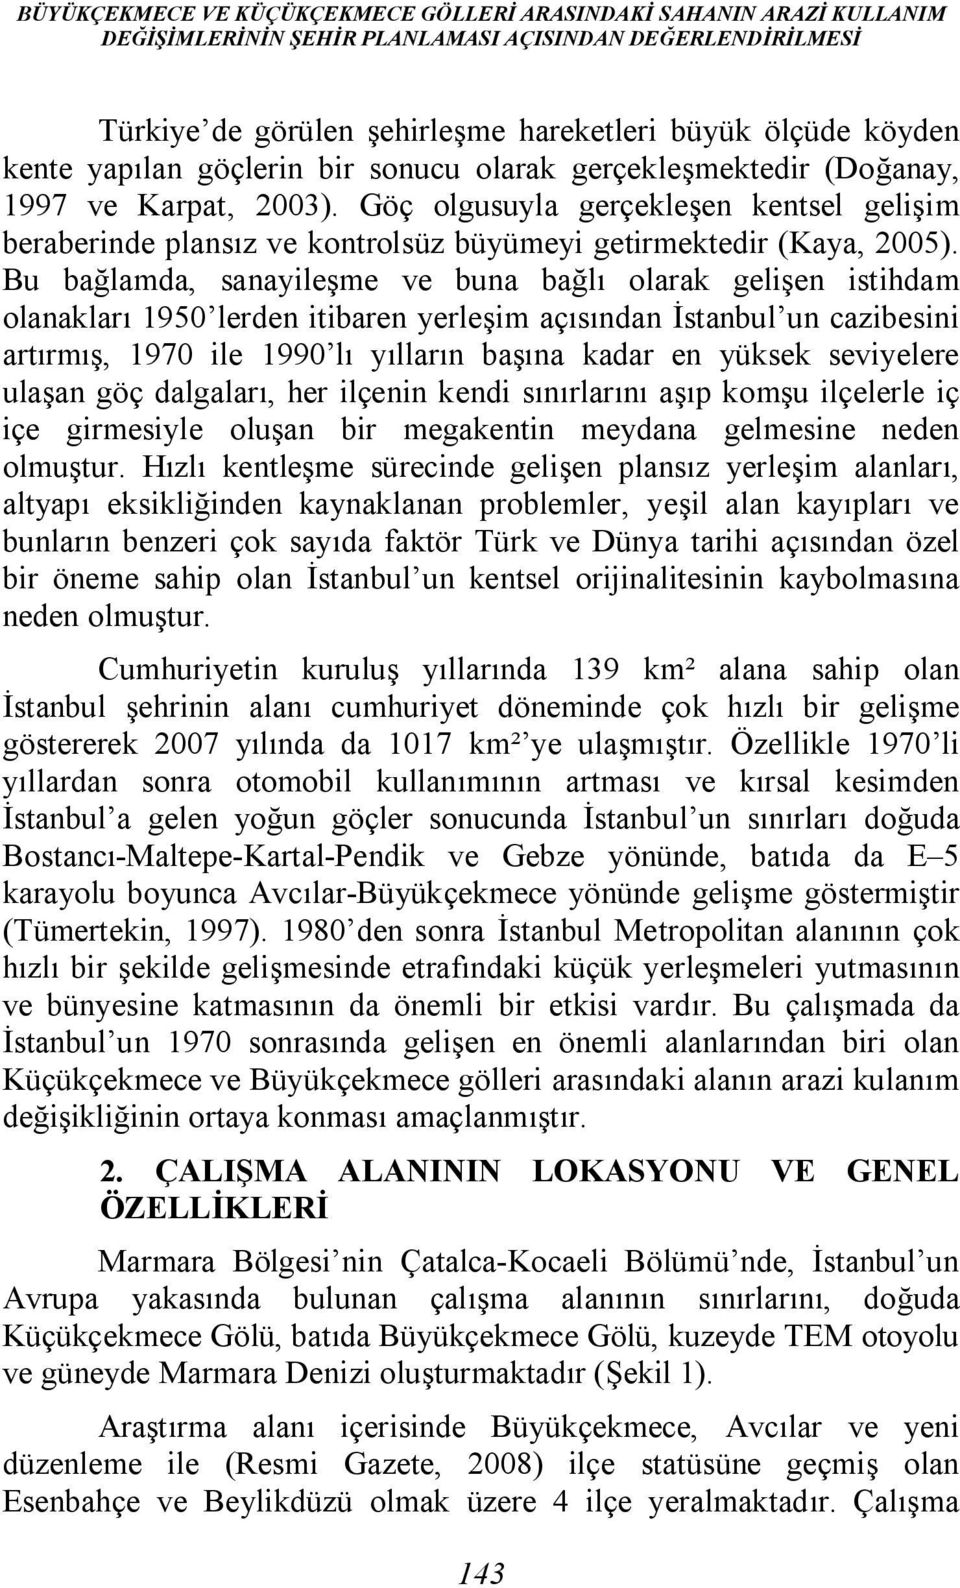 Bu bağlamda, sanayileşme ve buna bağlı olarak gelişen istihdam olanakları 1950 lerden itibaren yerleşim açısından İstanbul un cazibesini artırmış, 1970 ile 1990 lı yılların başına kadar en yüksek